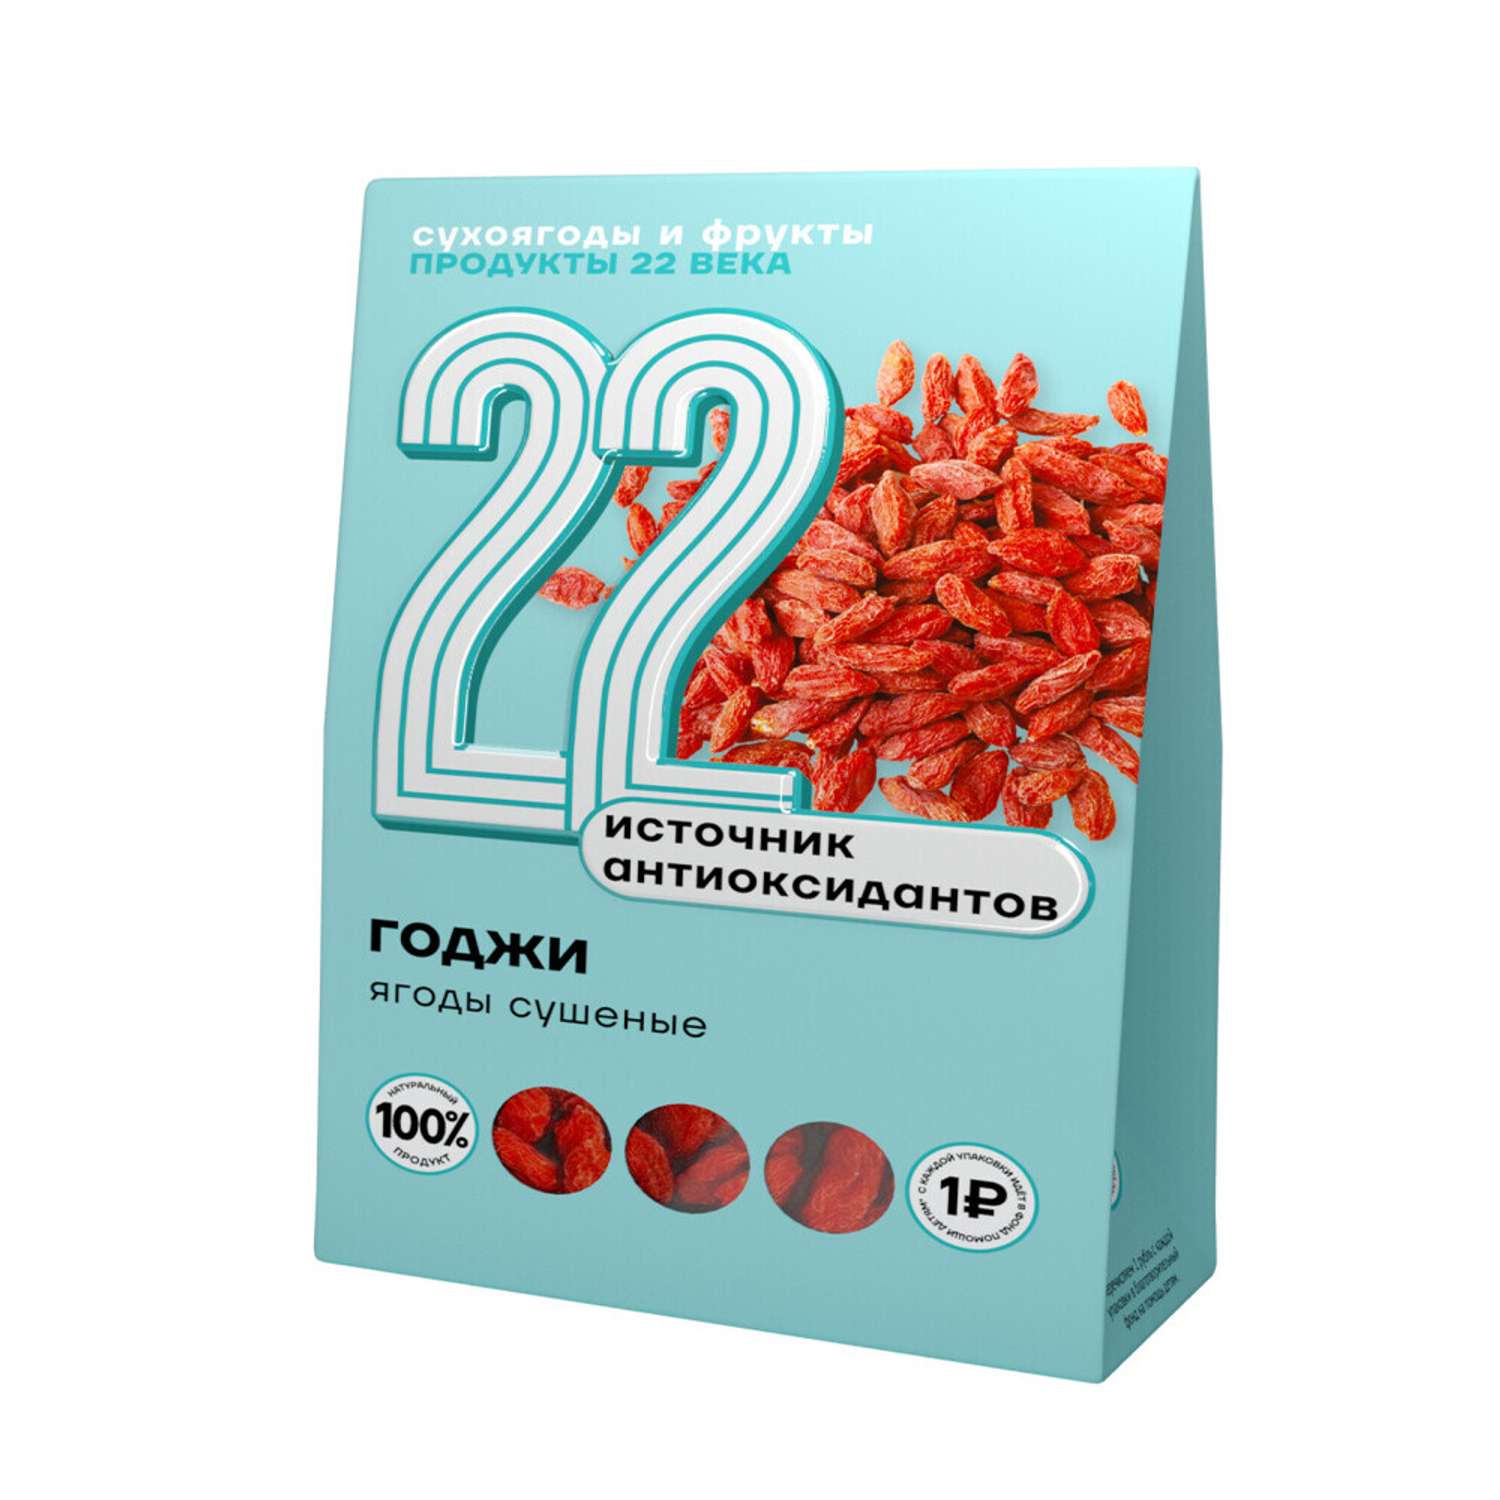 Product 22 ru. Сушеные ягоды годжи калорийность. Сухоягоды. Ягоды годжи упаковка с составом. Манго продукты XXII века сушеное, 100 г.